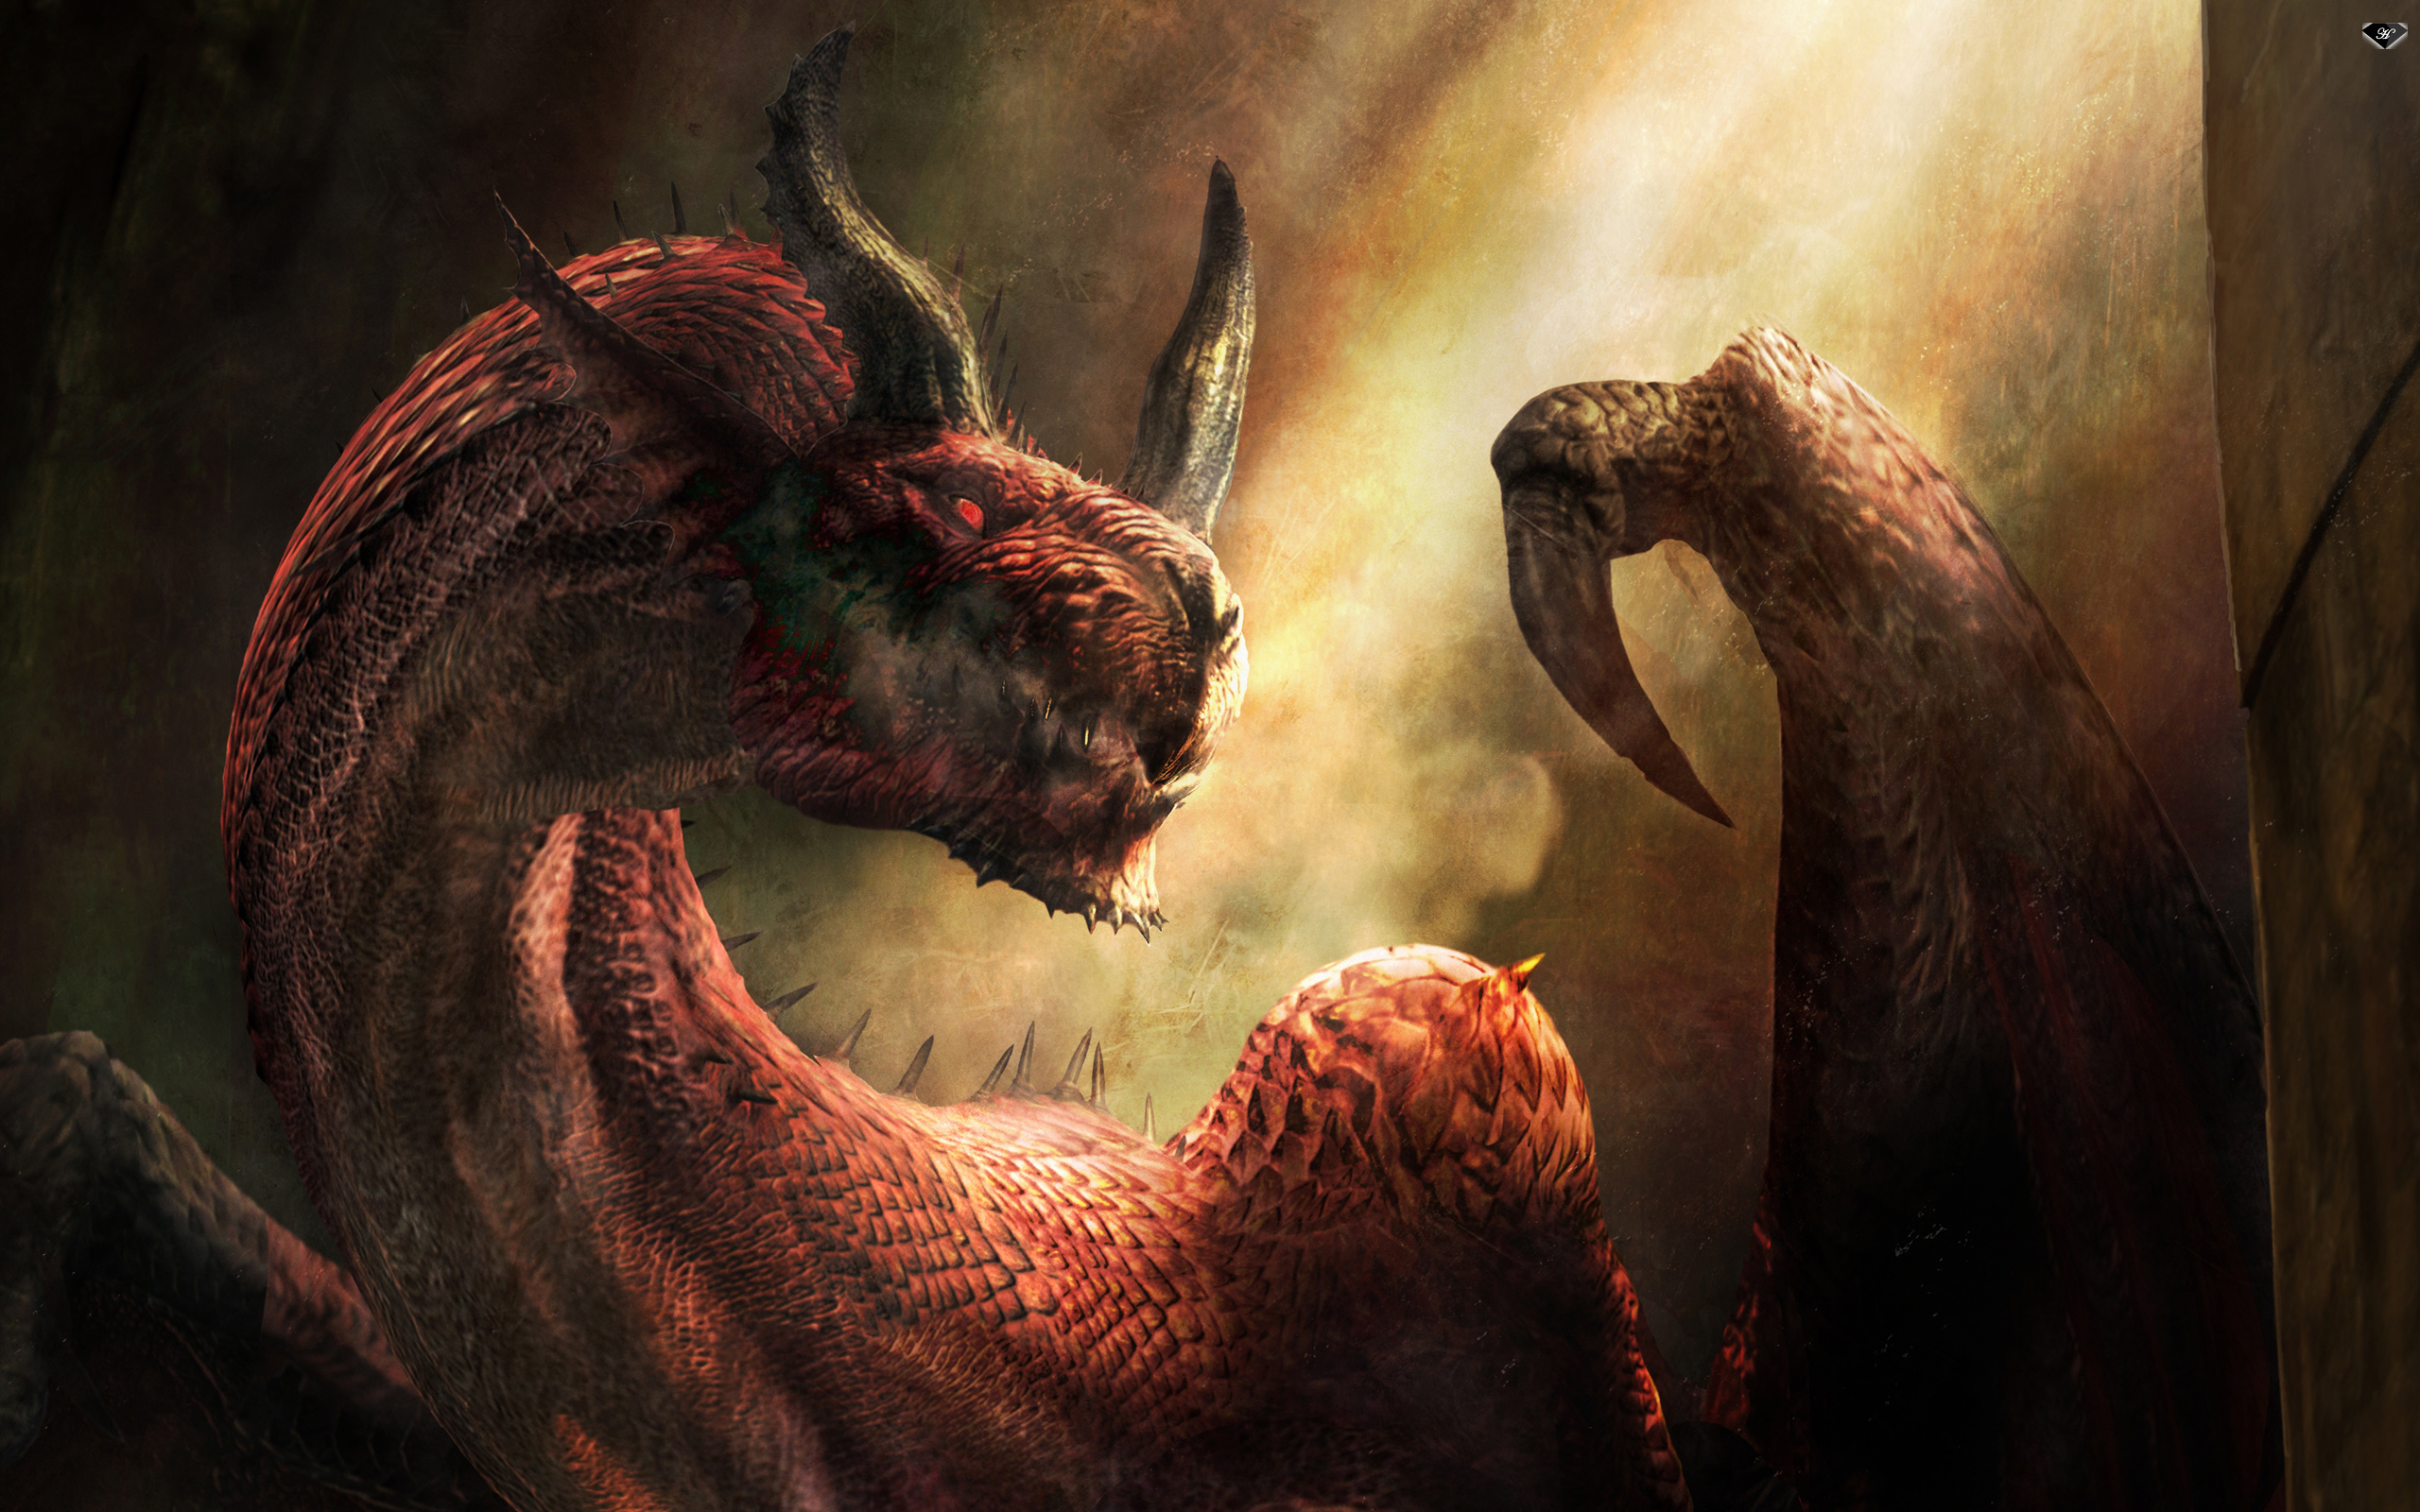 Dragon's Dogma 2 - Download